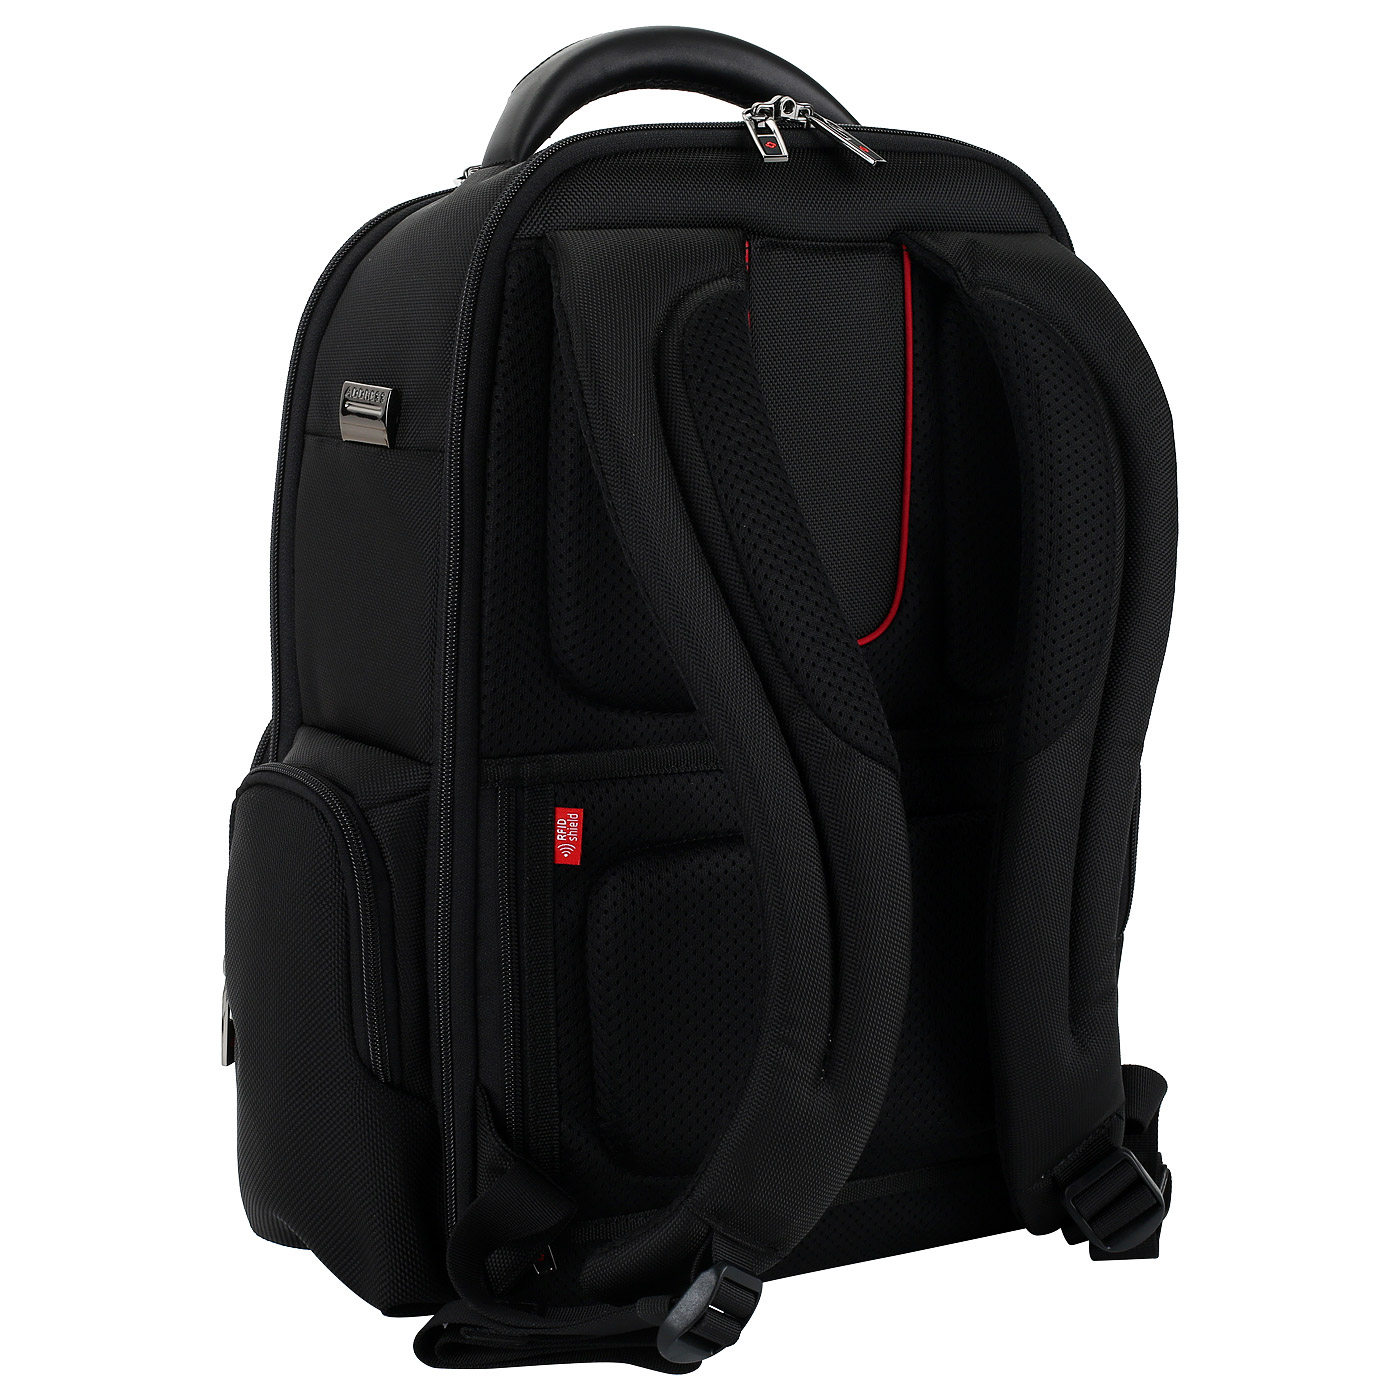 Комбинированный рюкзак с двумя отделами Samsonite Pro-DLX 5